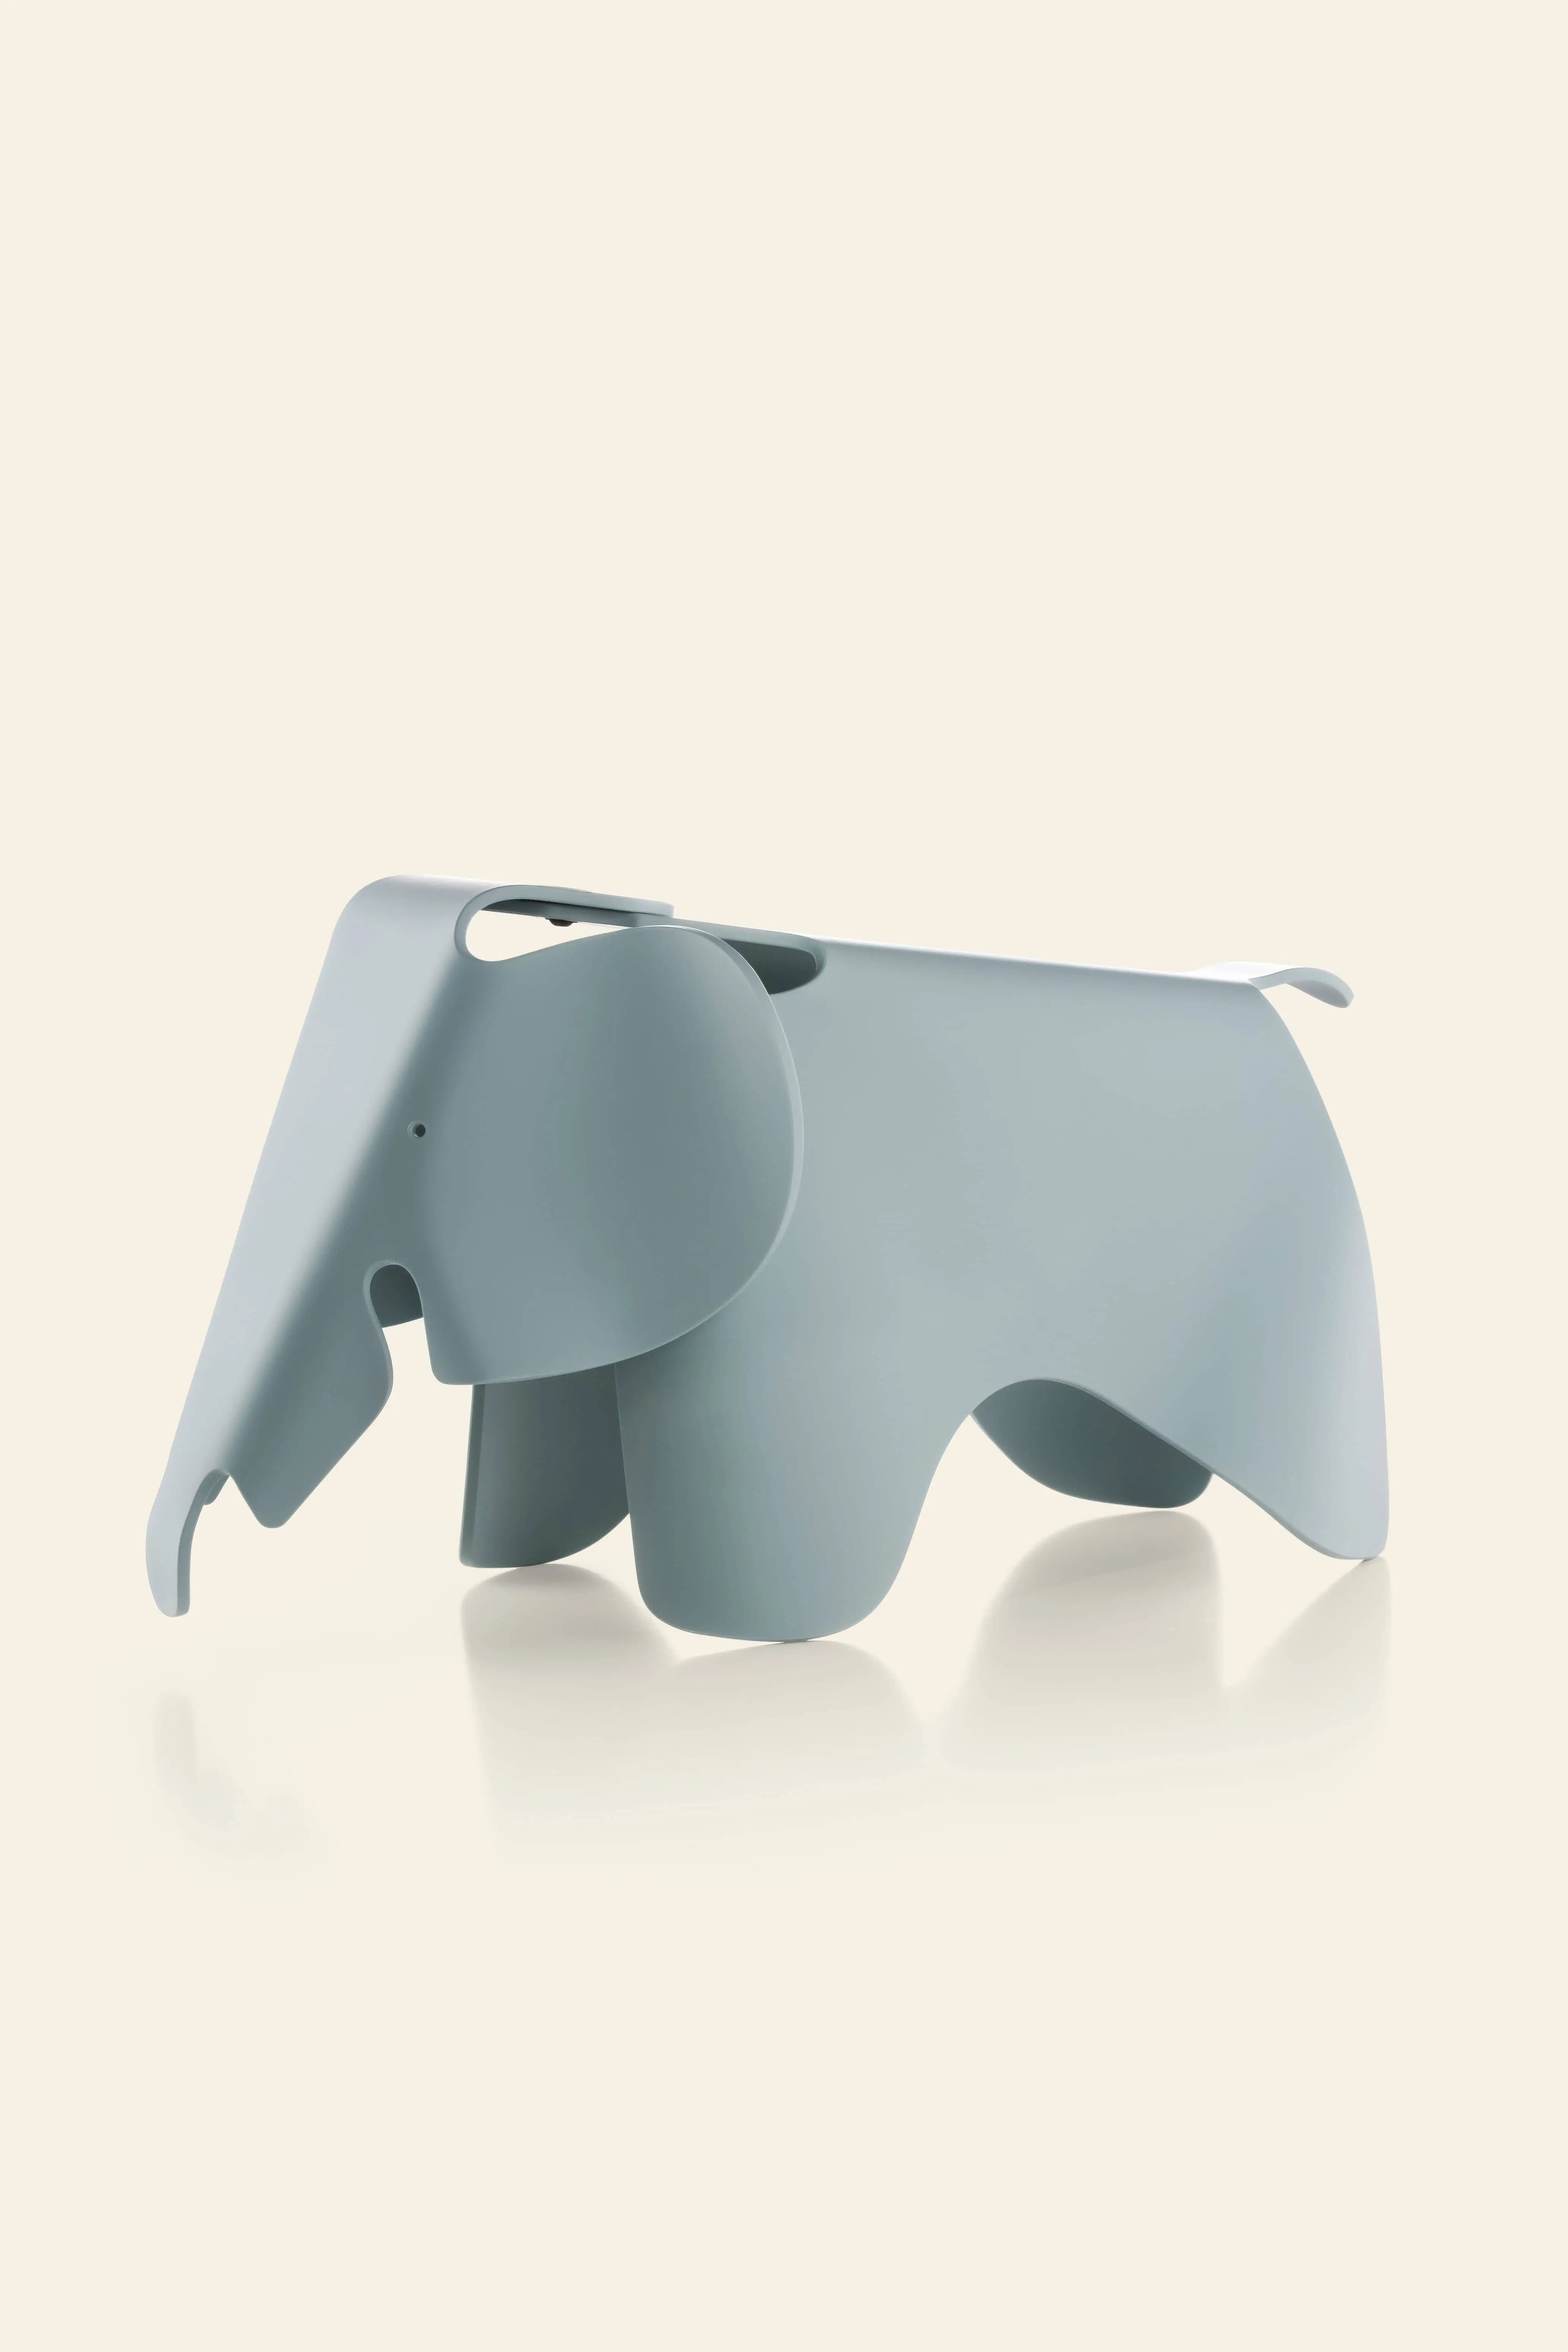 Vitra Eames Elephant Small Ice Grey 2